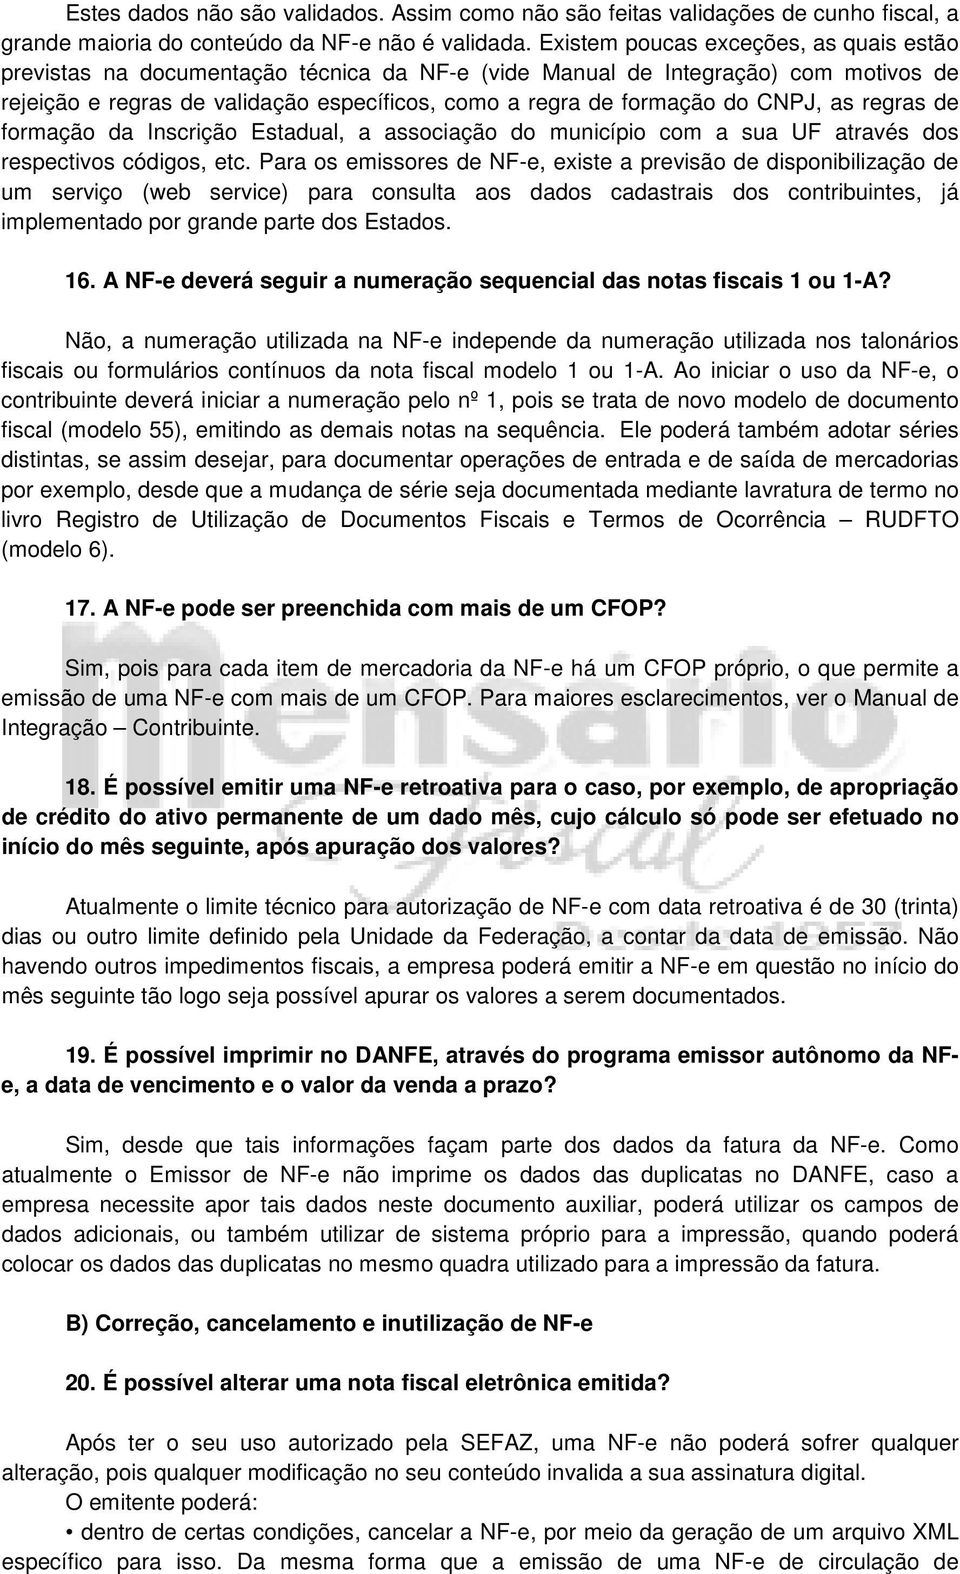 CNPJ, as regras de formação da Inscrição Estadual, a associação do município com a sua UF através dos respectivos códigos, etc.